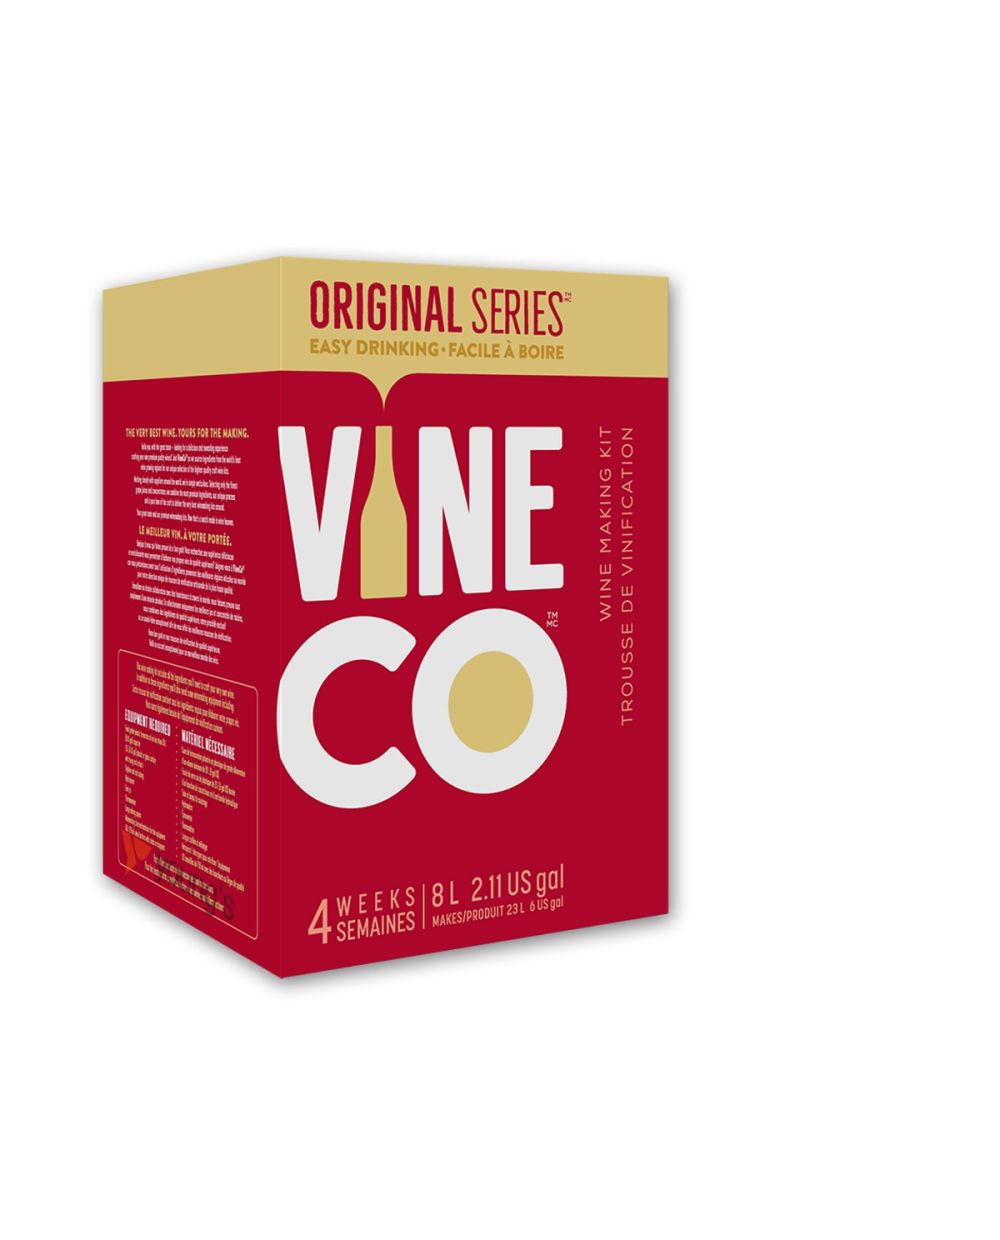 Original Series Pinot Grigio, Italy Wine Kit